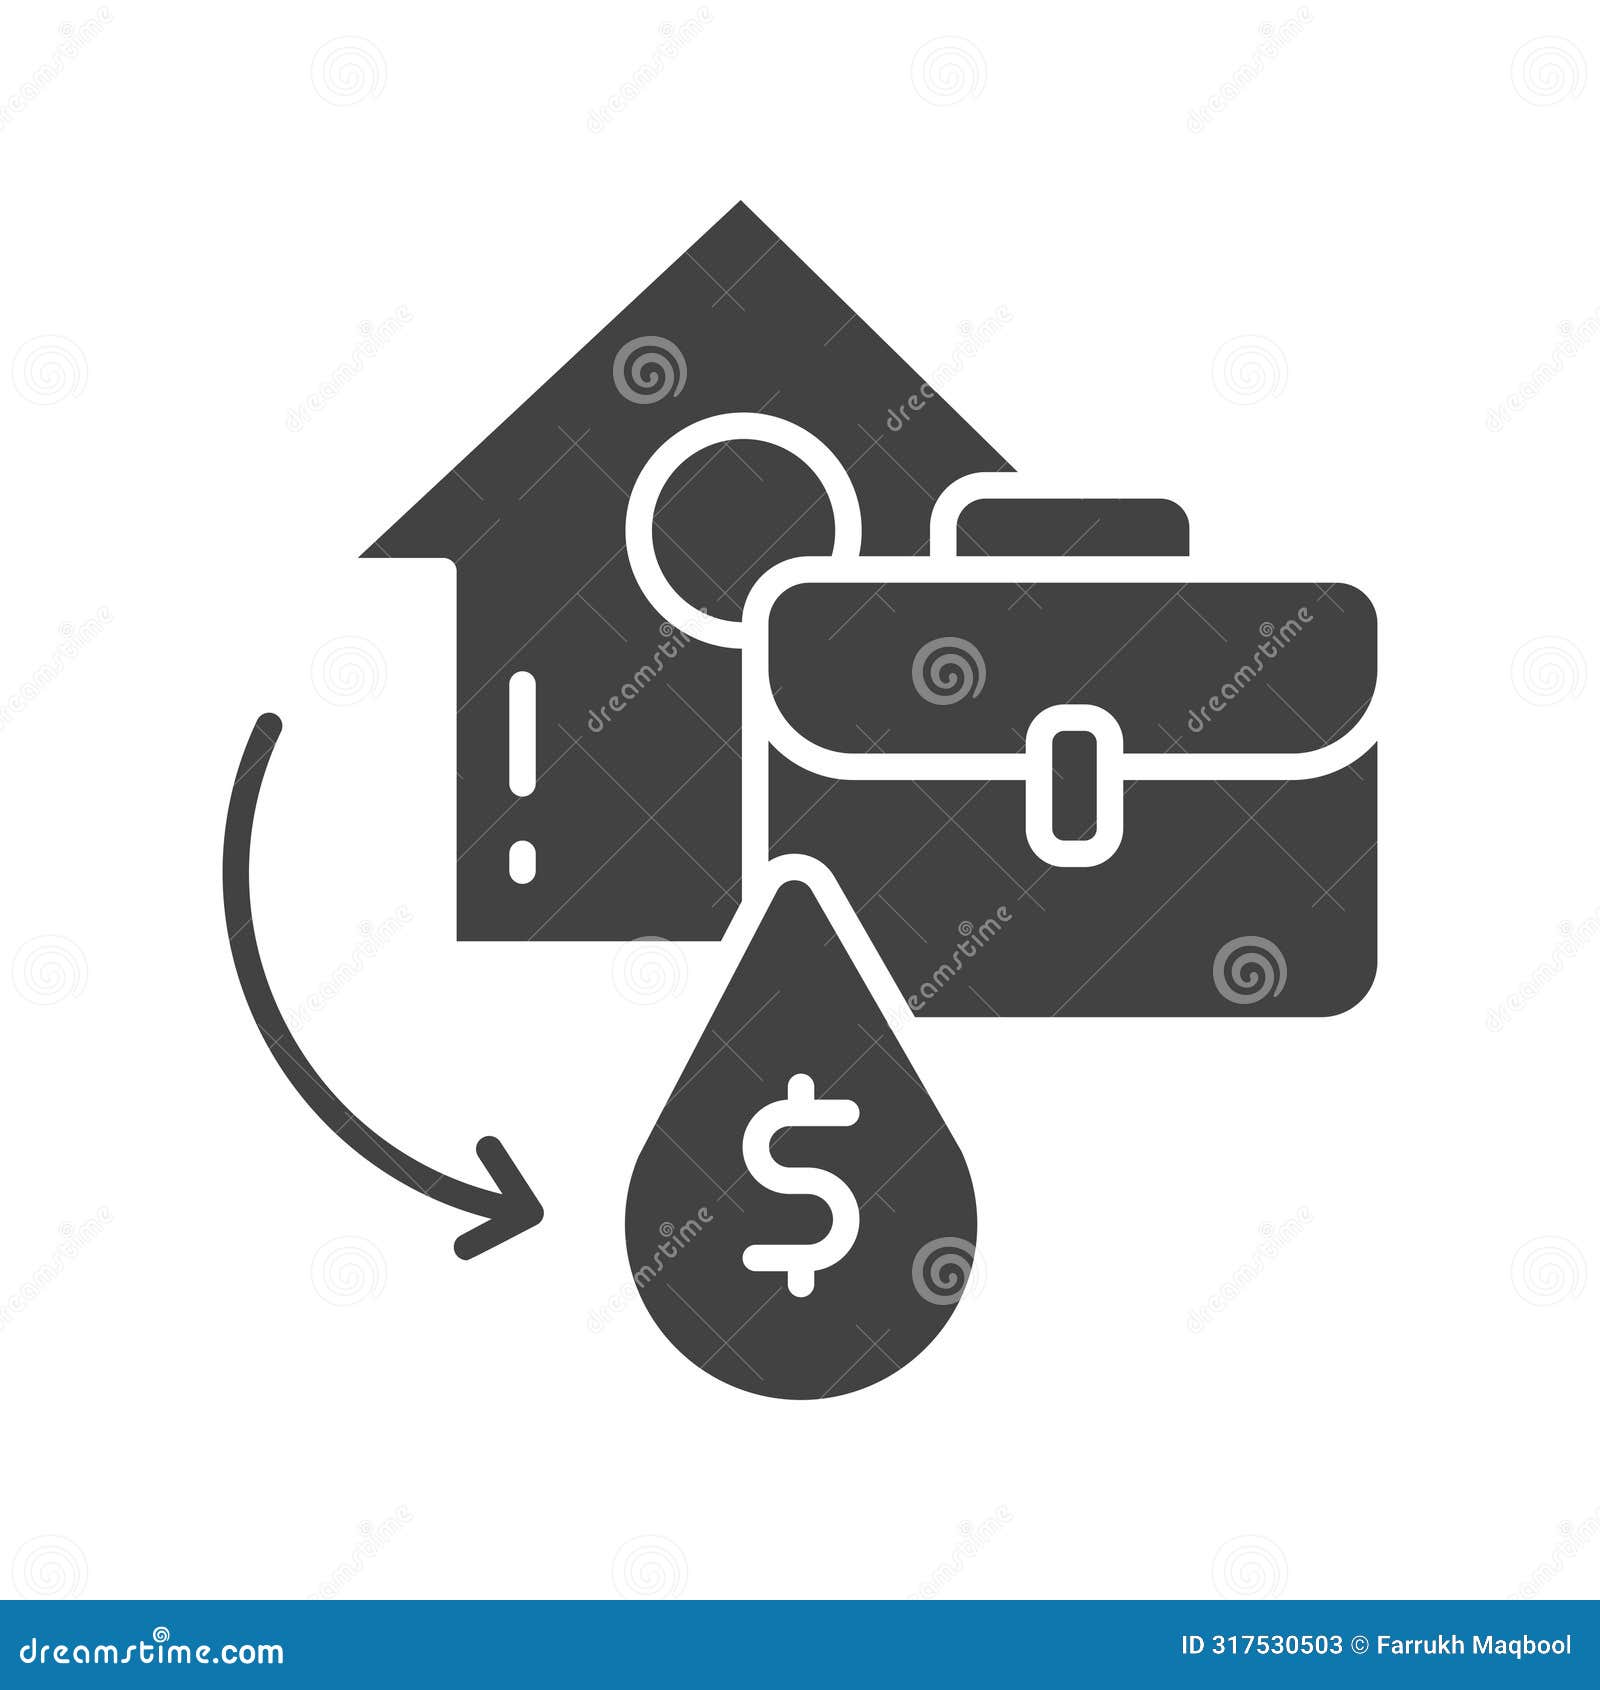 liquidity icon  image.